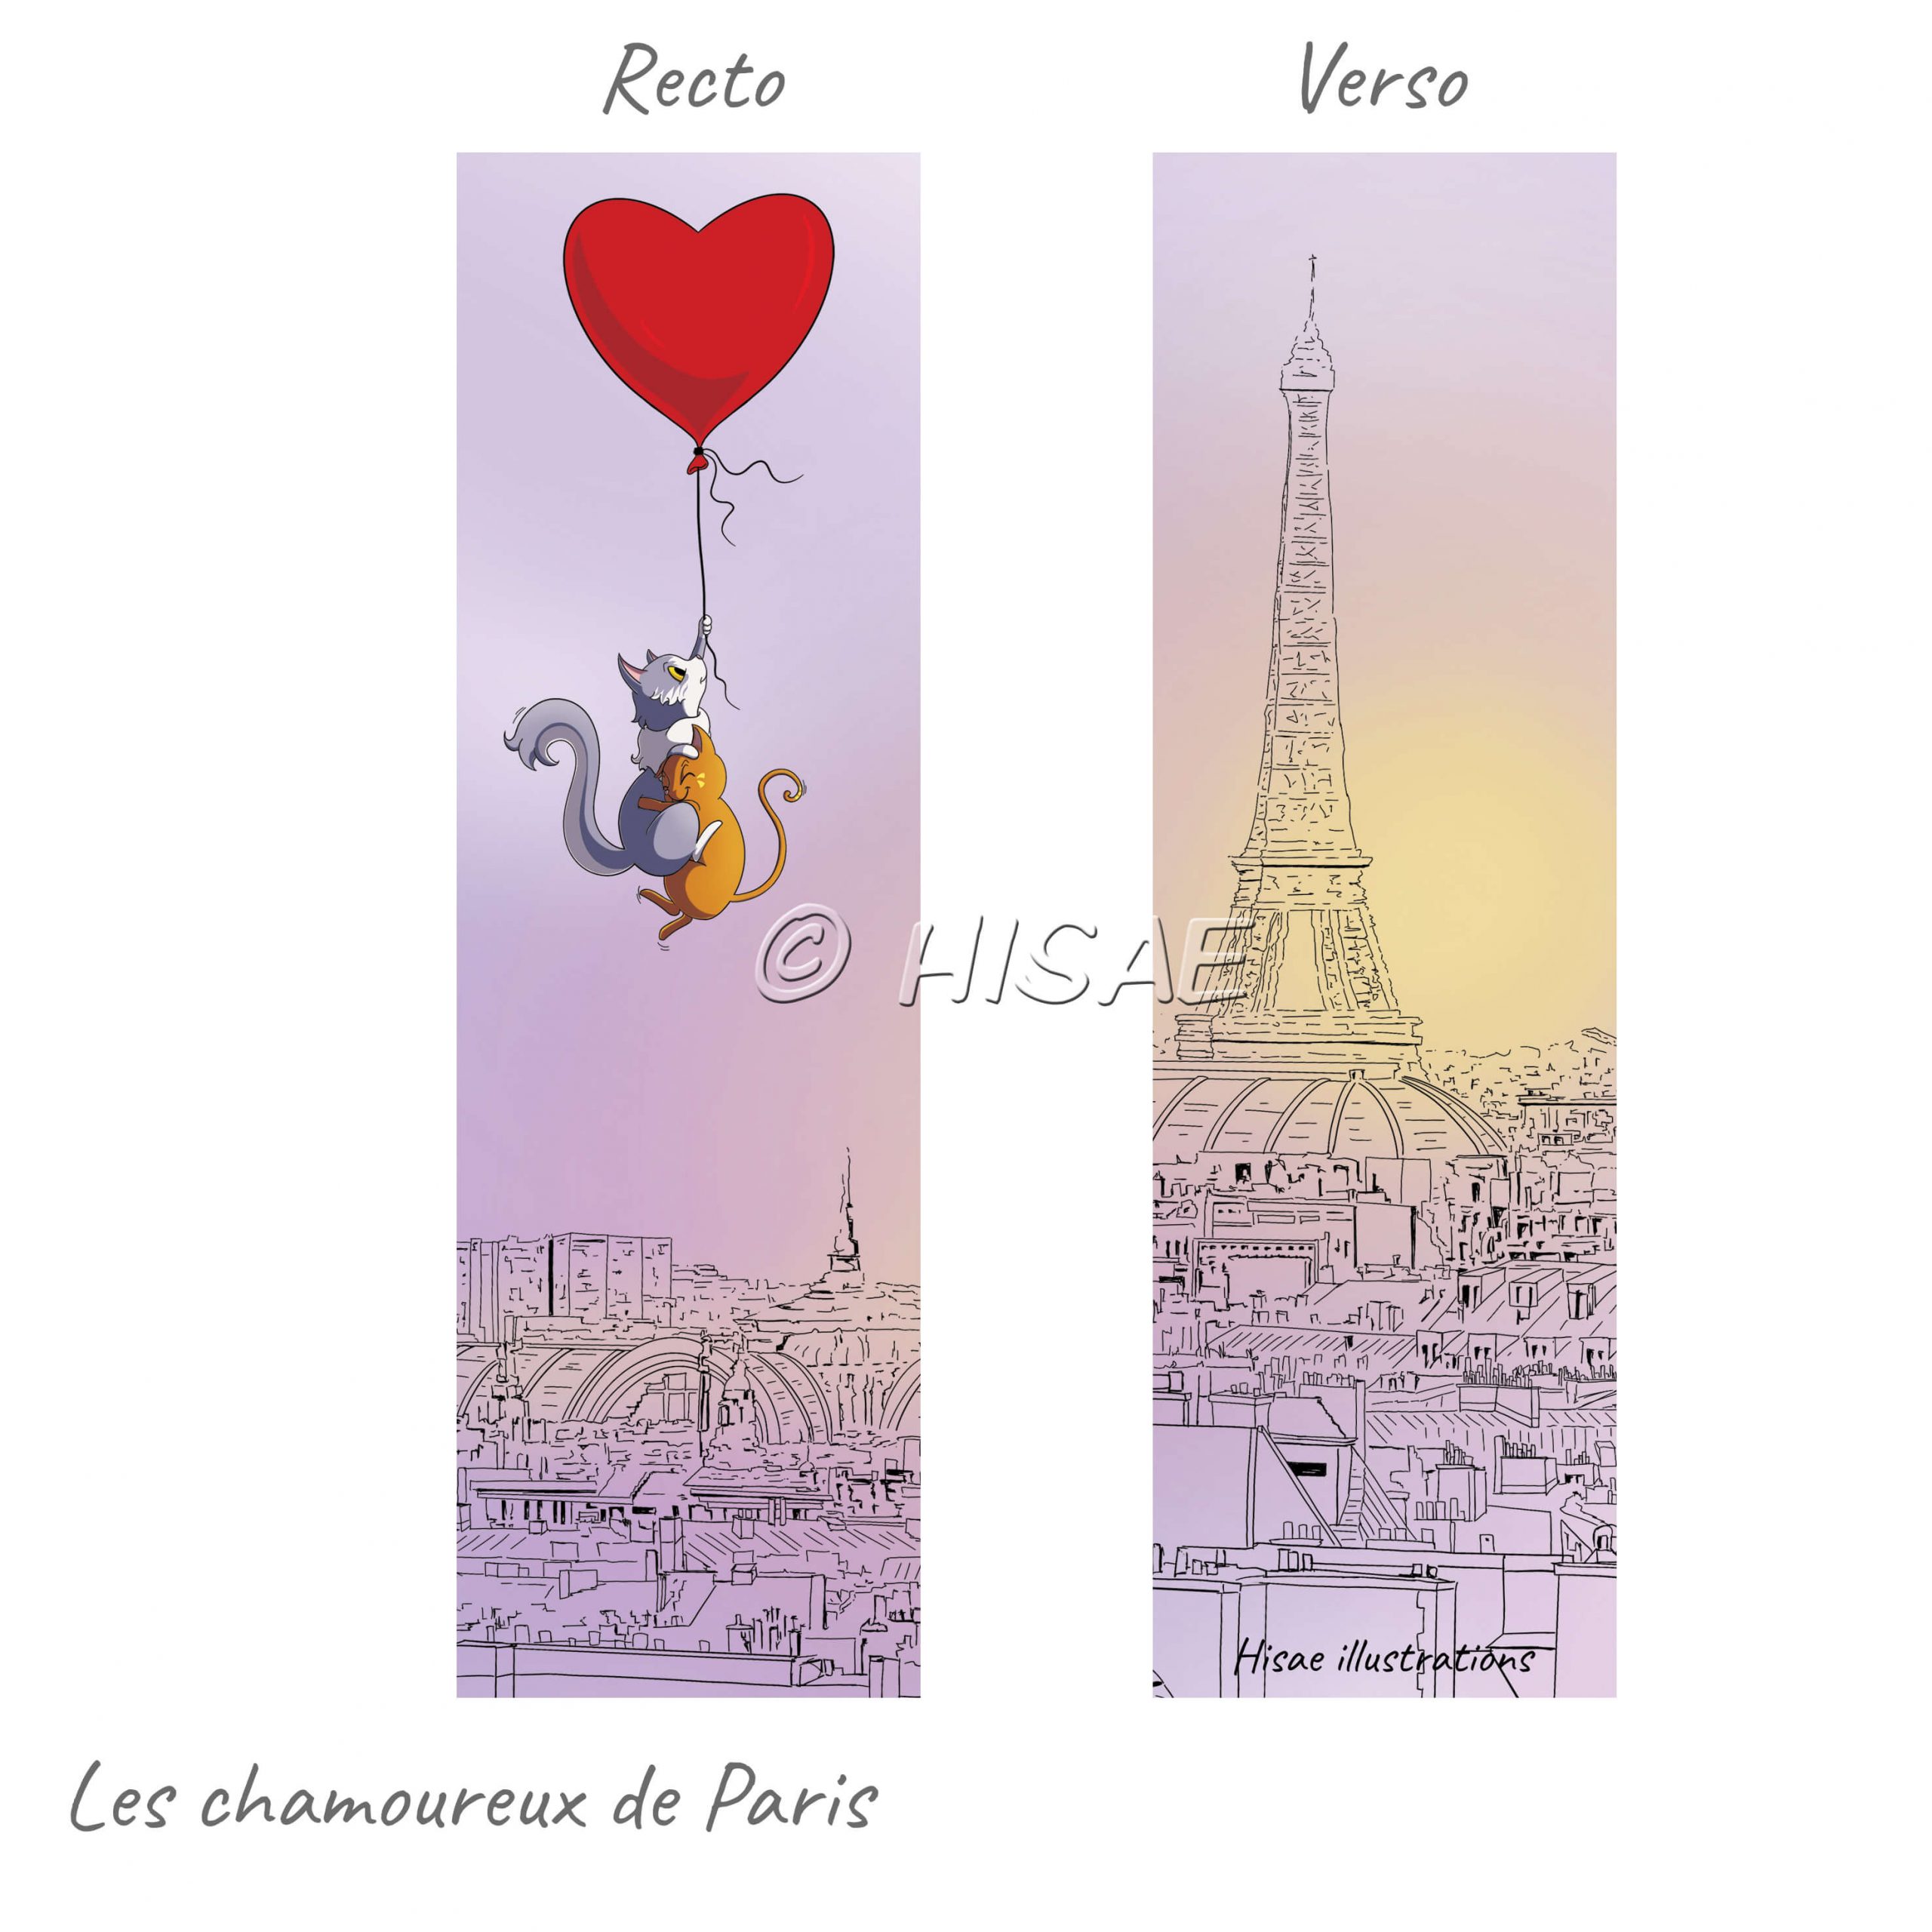 Marque-page numérique représentant deux chats amoureux survolant Paris accrochés à un ballon en forme de cœur qui s'envolent au dessus de Paris ©Hisae illustrations